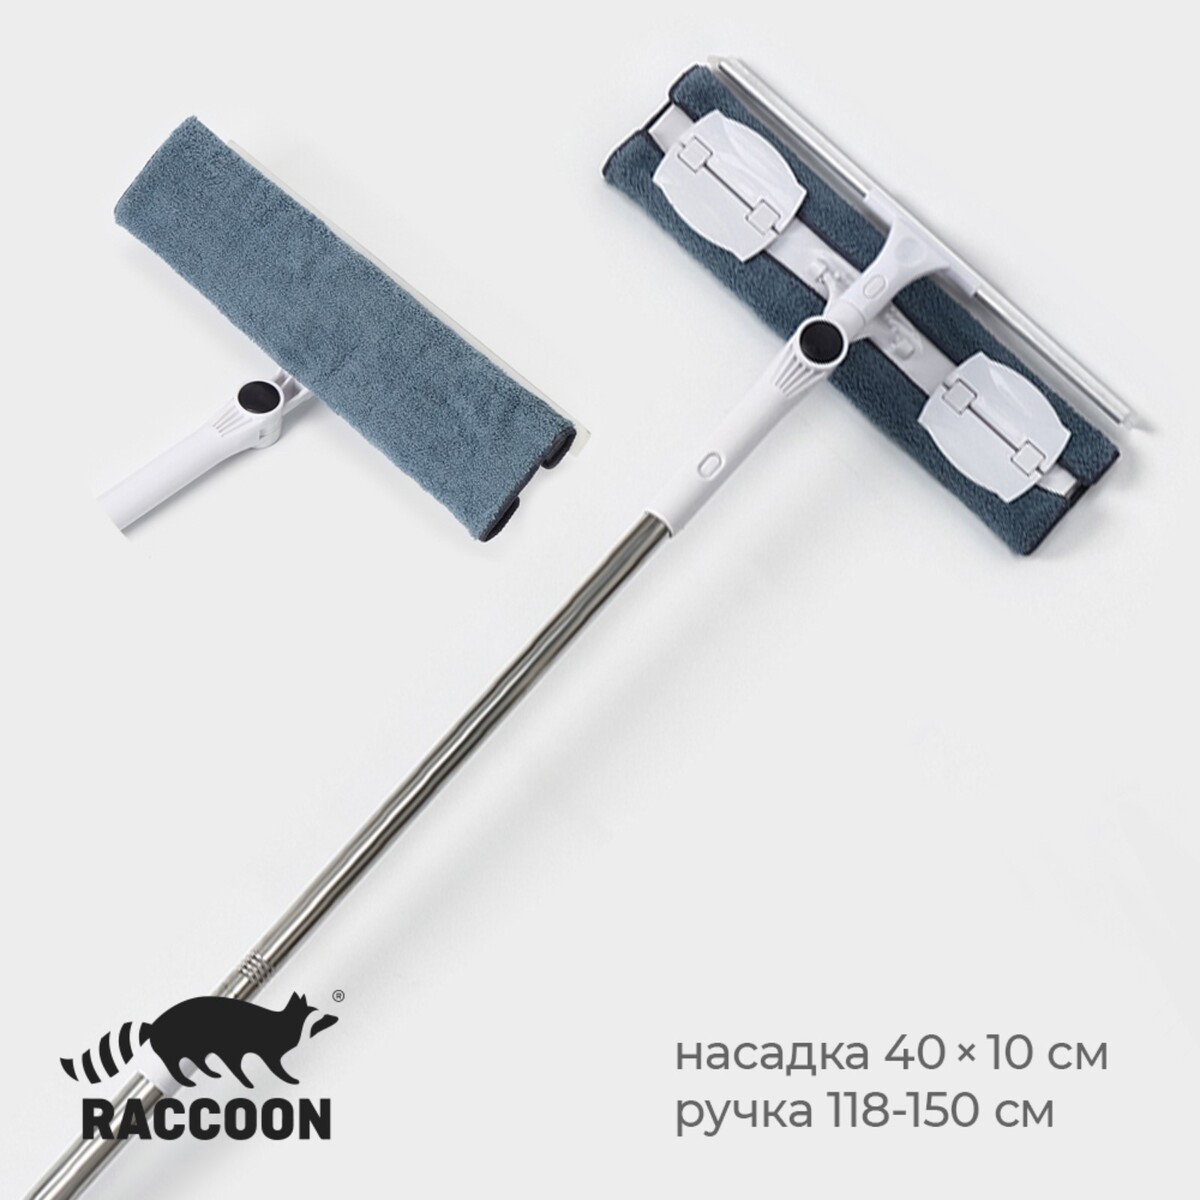 Окномойка бабочка raccoon, стальная телескопическая ручка, микрофибра, поворот на 180°, 40×10×118(150) см